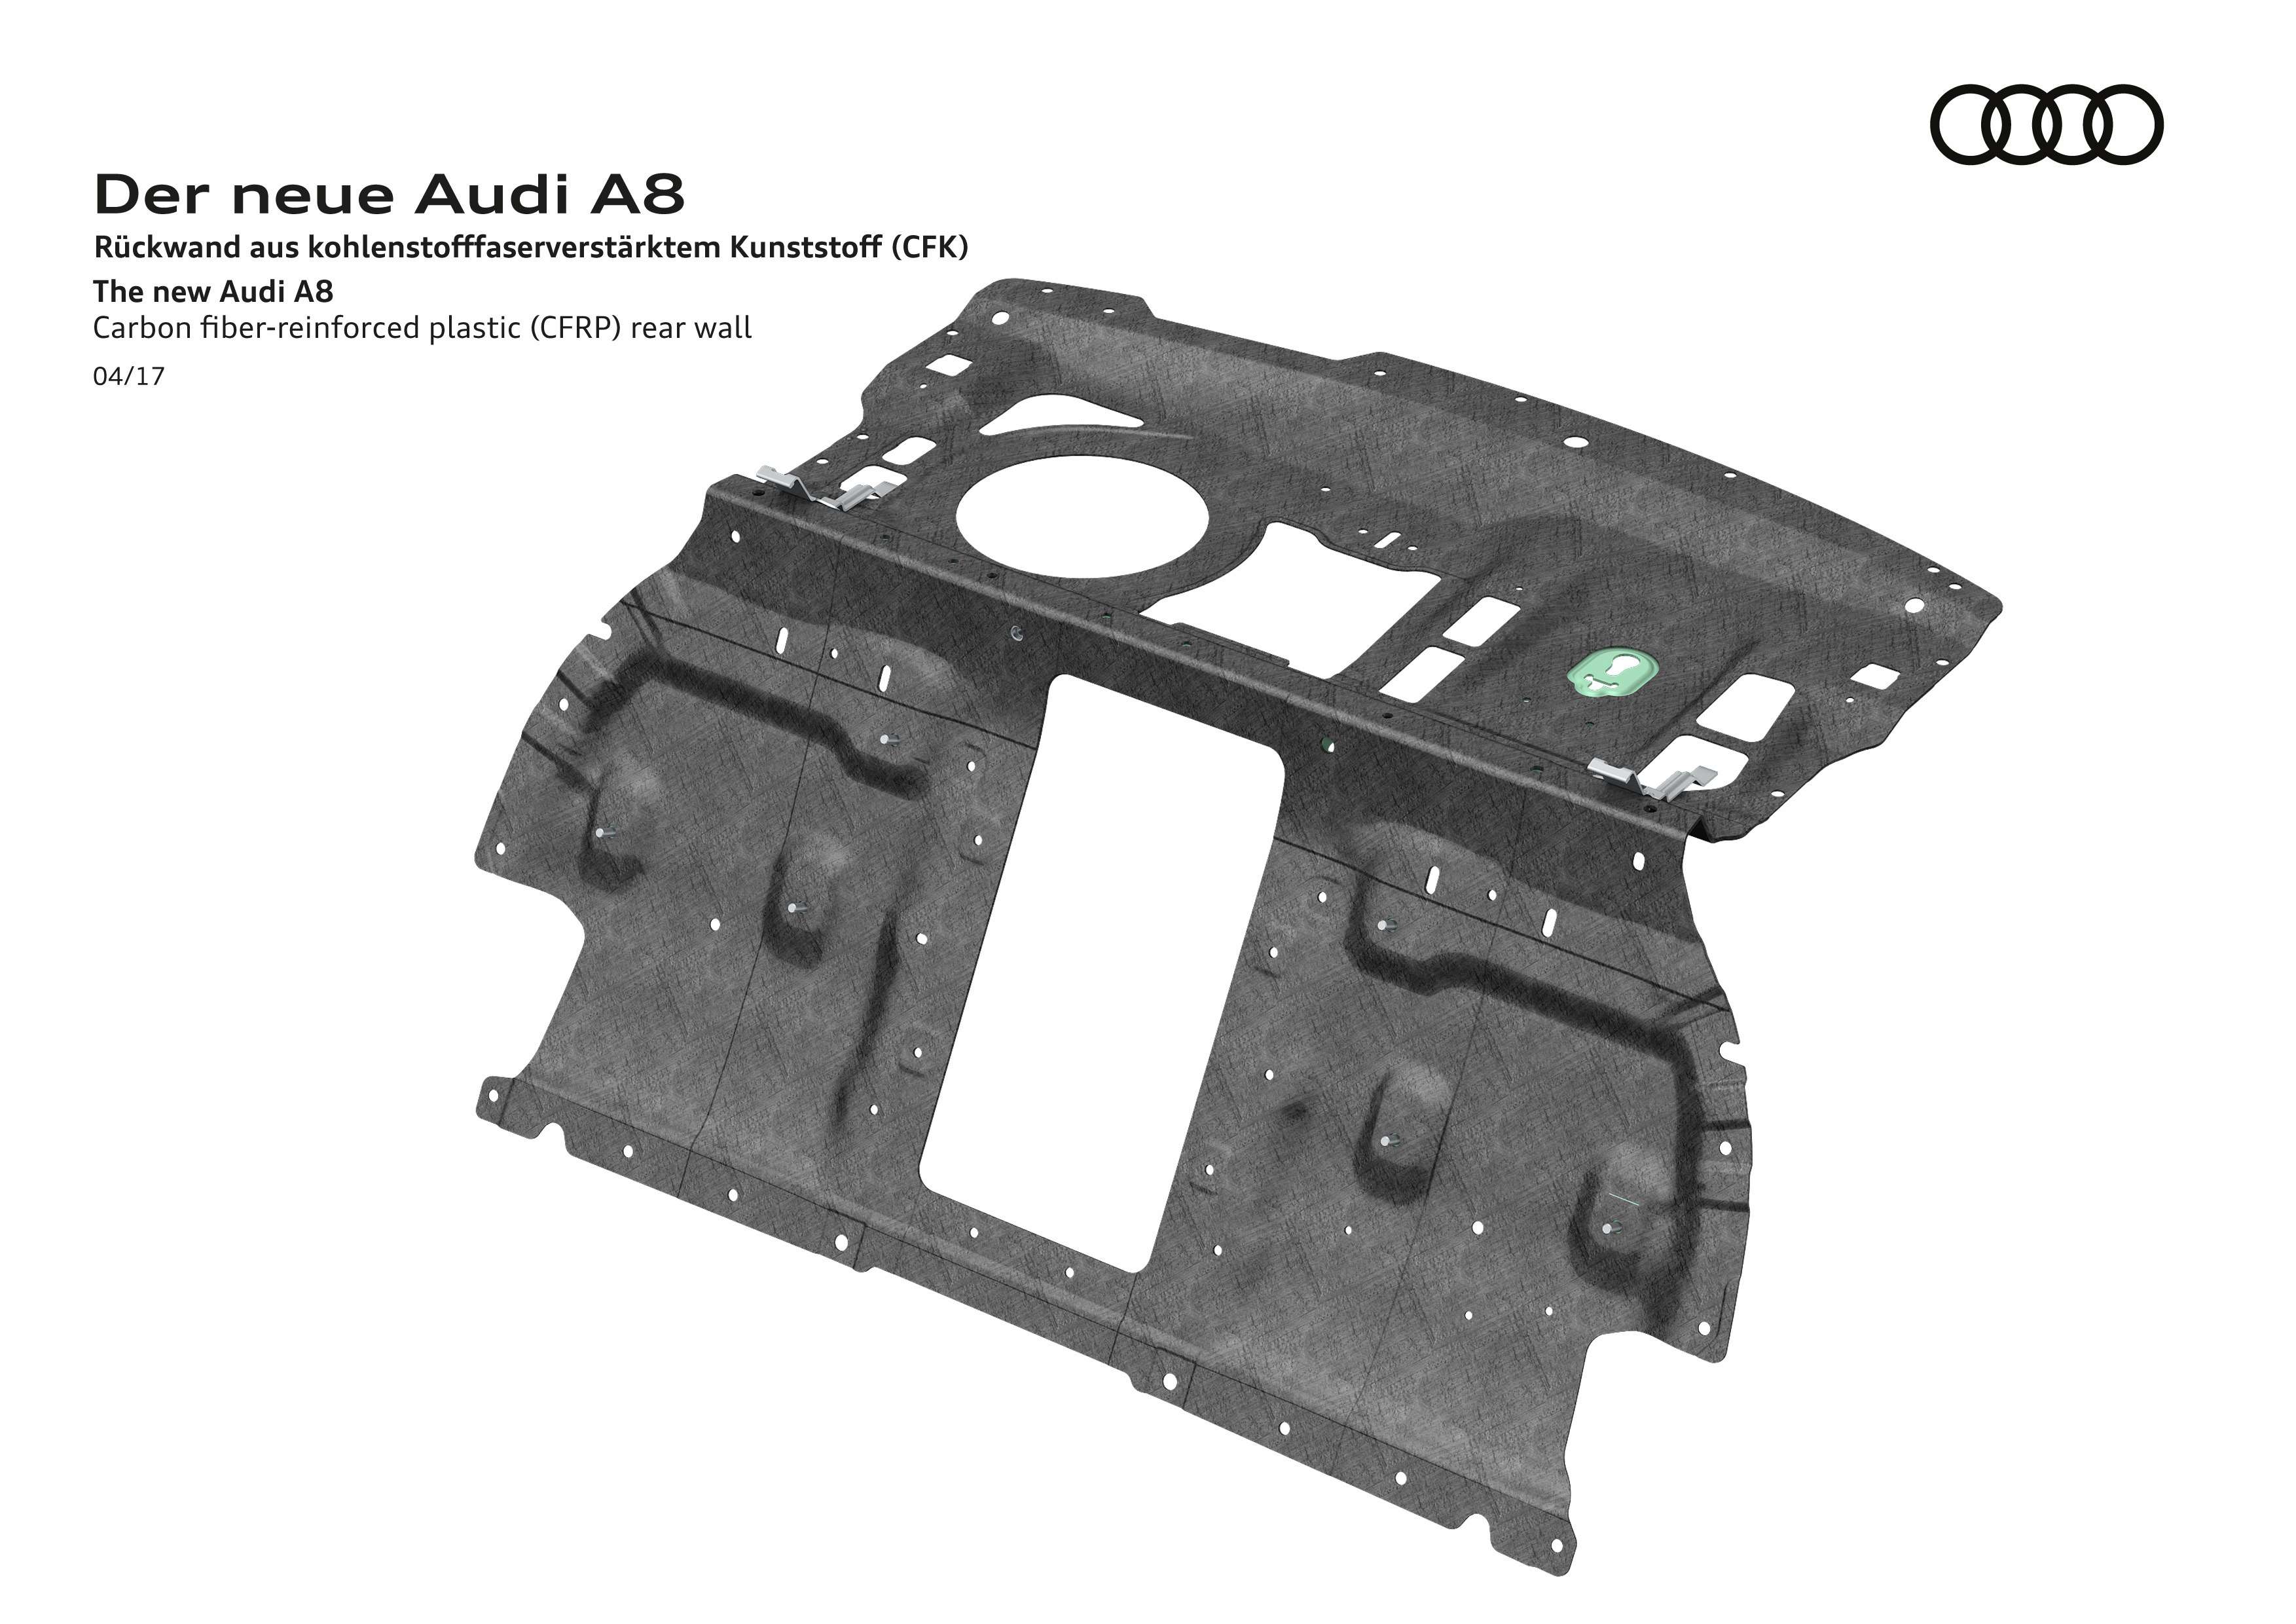 Новый Audi A8: работа над ошибками BMW — фото 732831